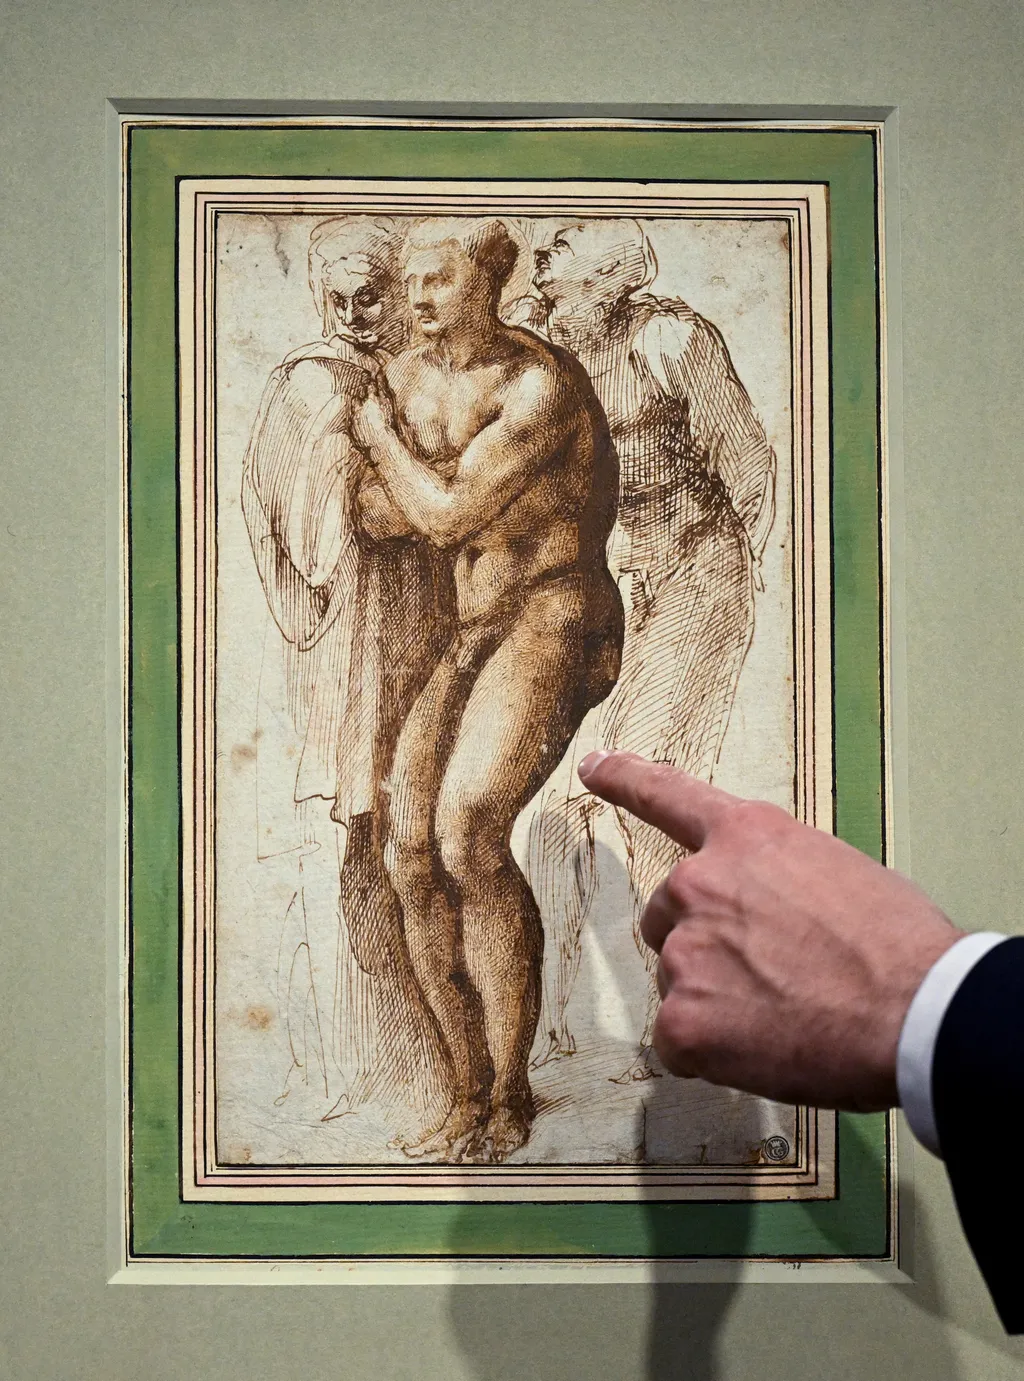 Michelangelo, árverés, rajz, párizs, kép, művészet, alkotás, aukció 